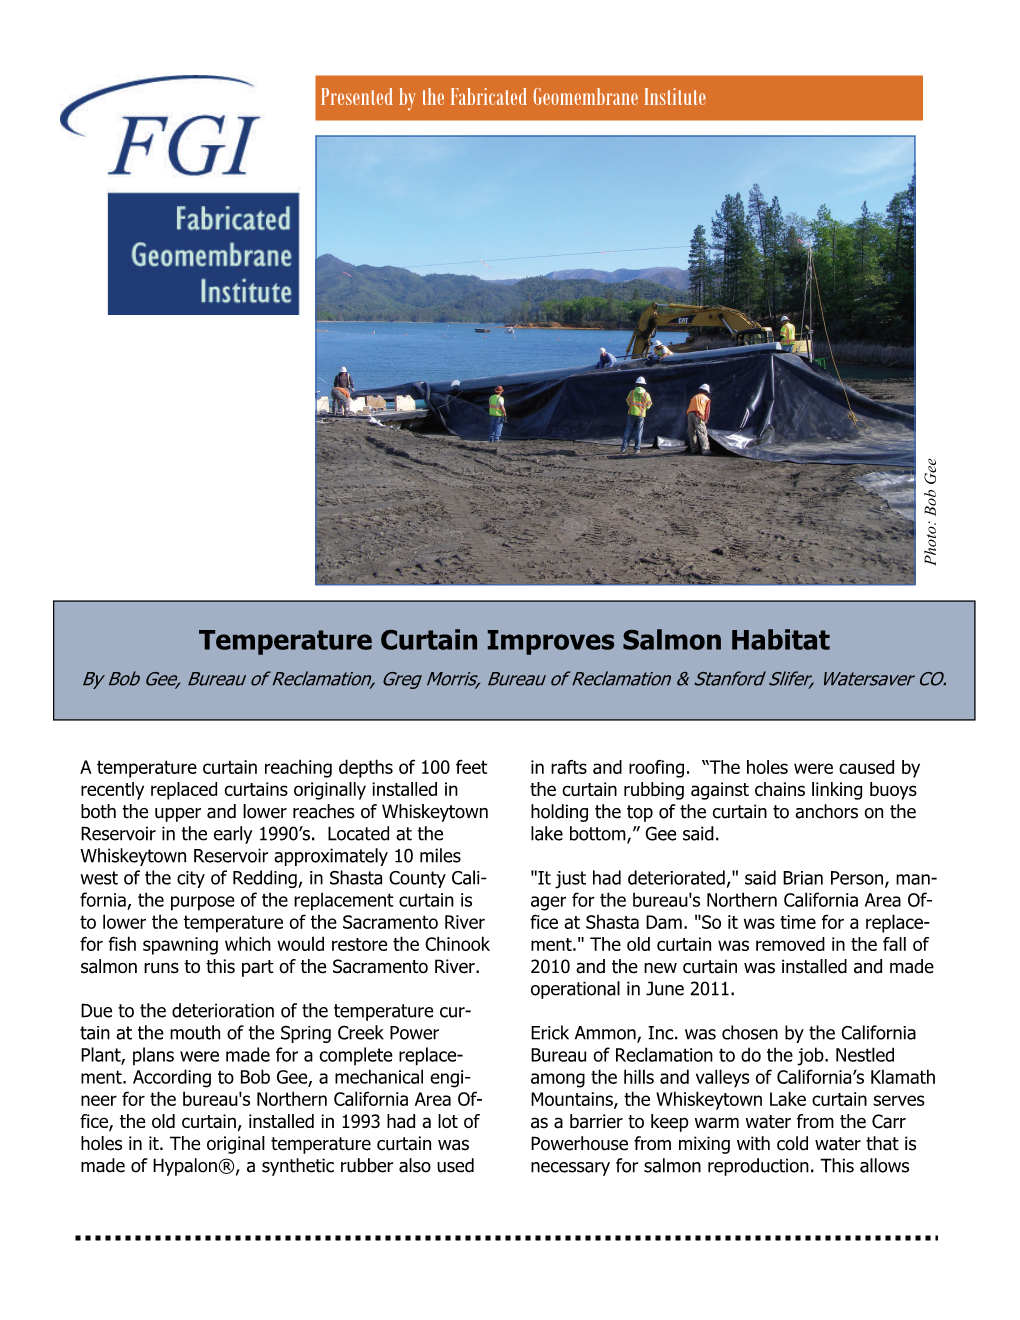 Temperature Curtain Improves Salmon Habitat